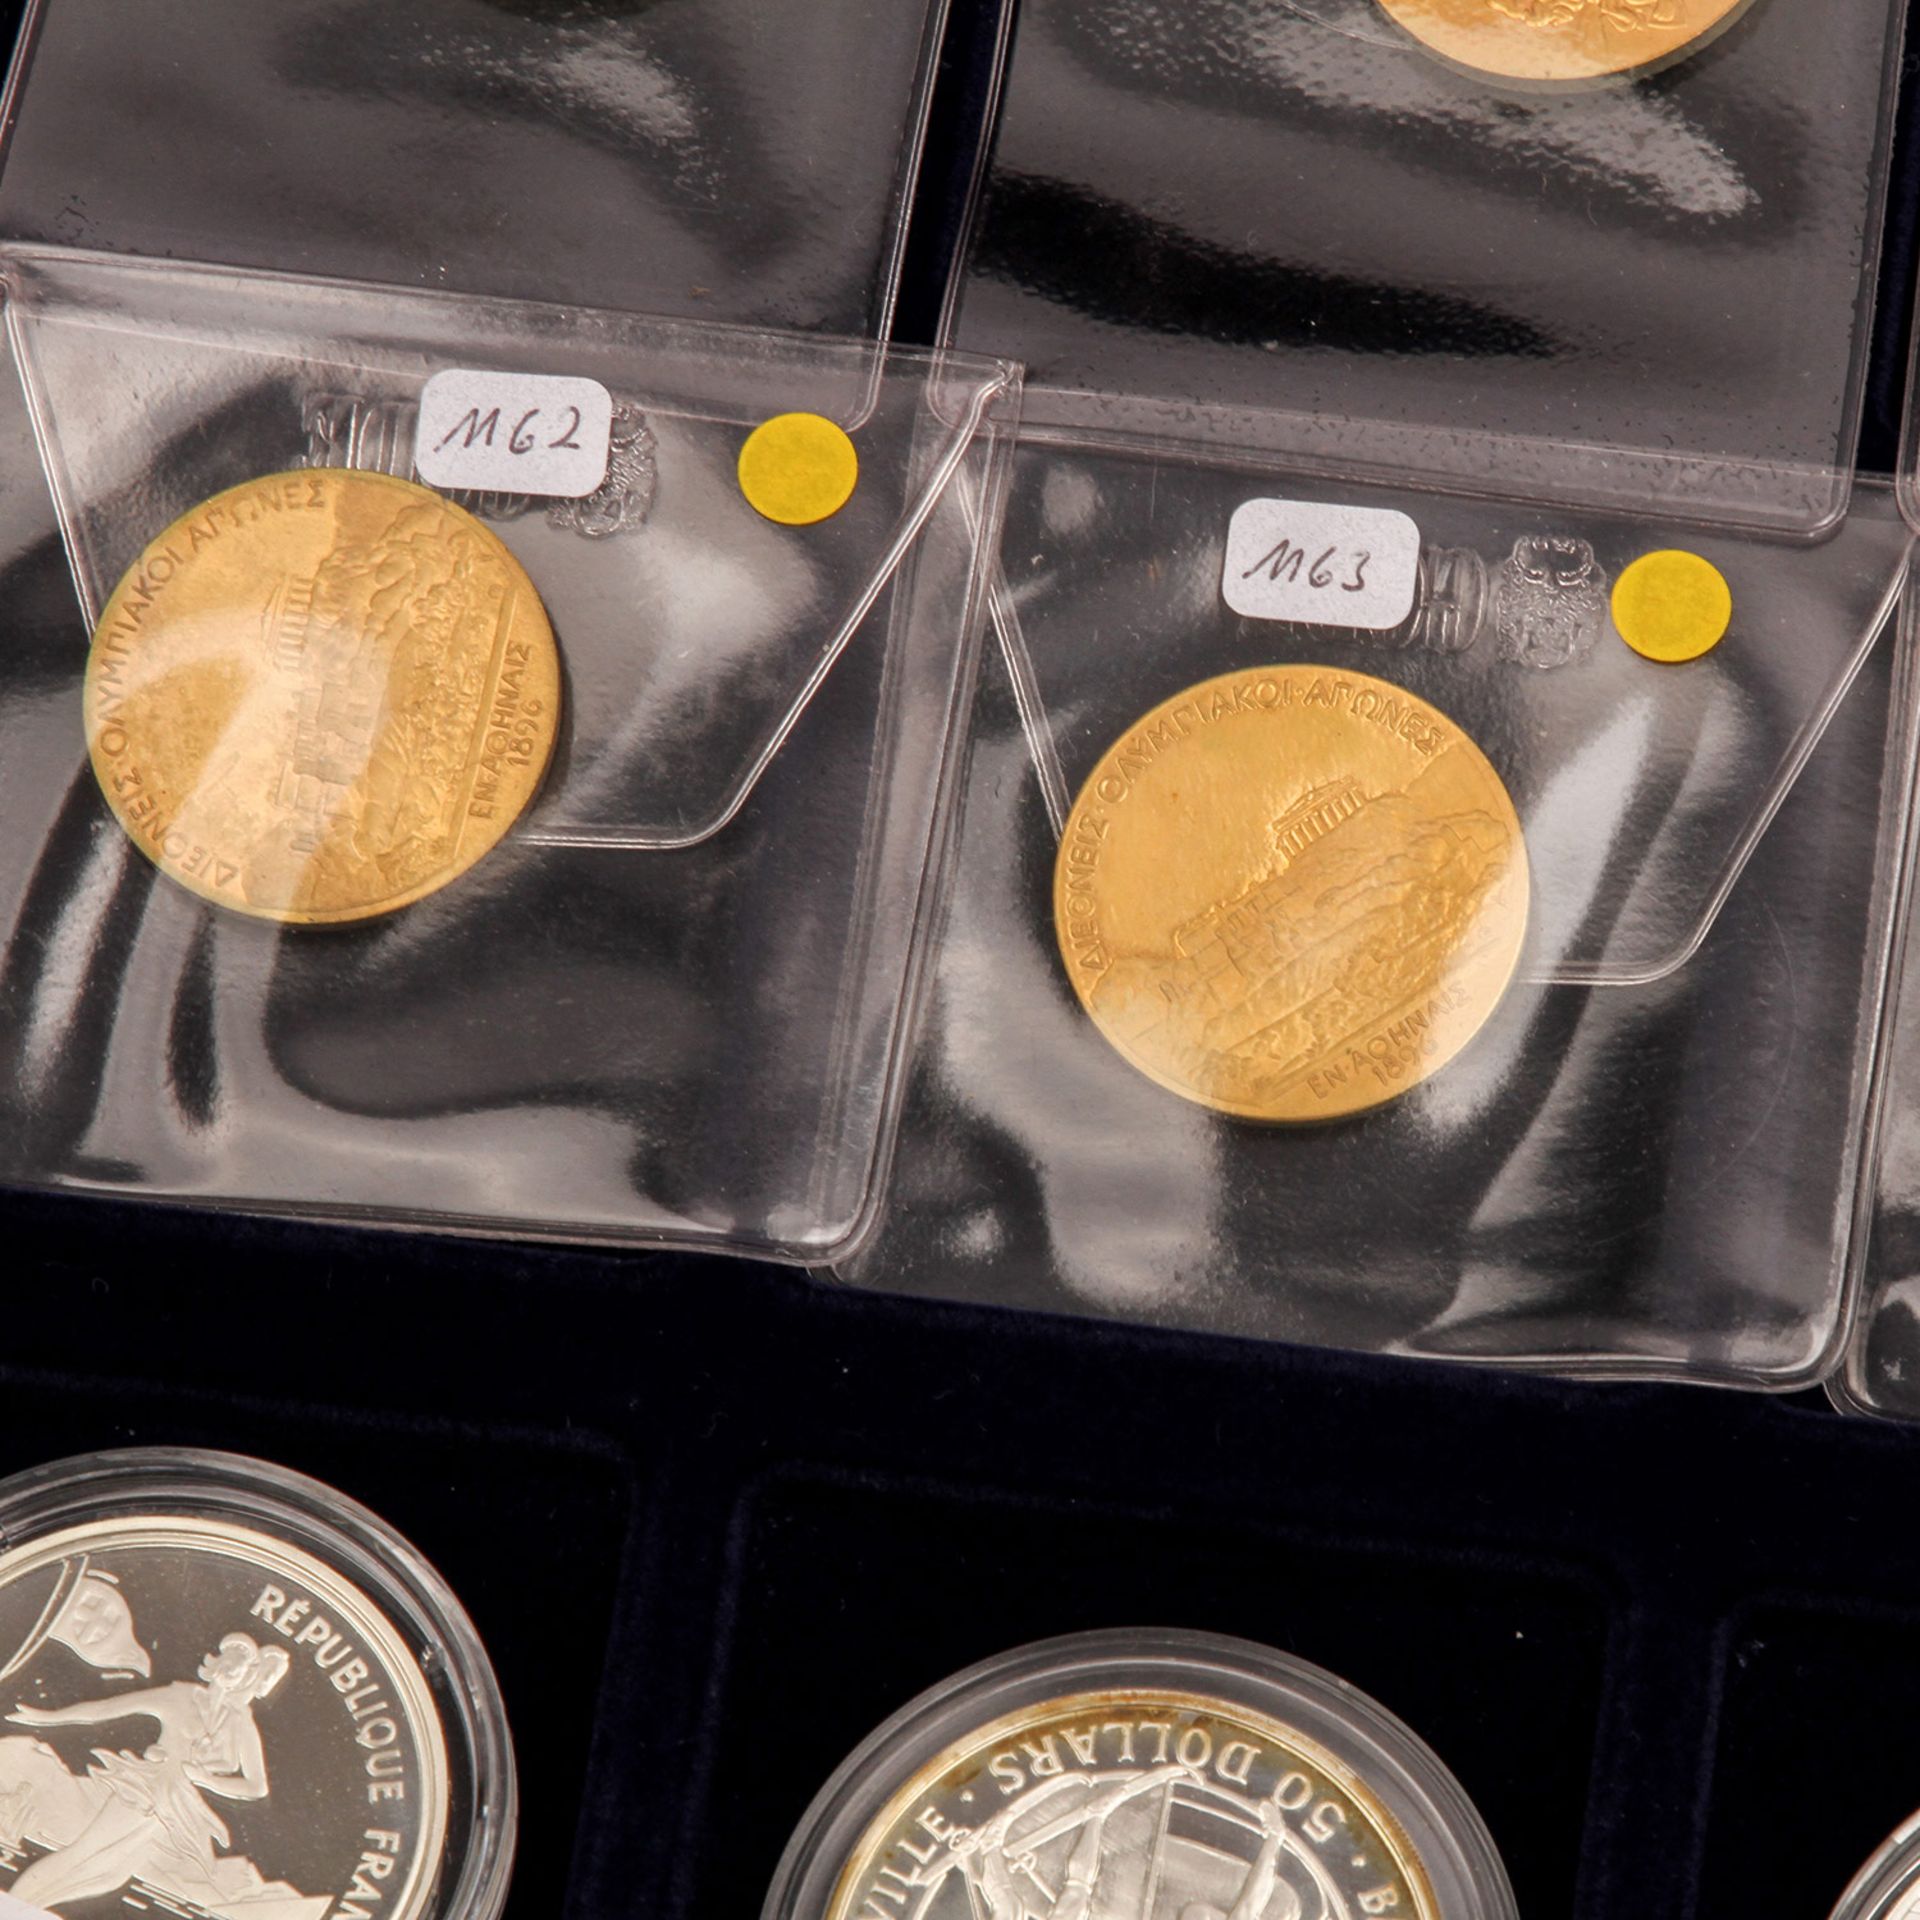 Lot Münzen und Medaillen, meist Olympia Thema, darunter auch wenige Can Dollars und China 5 Yuan - Bild 4 aus 5